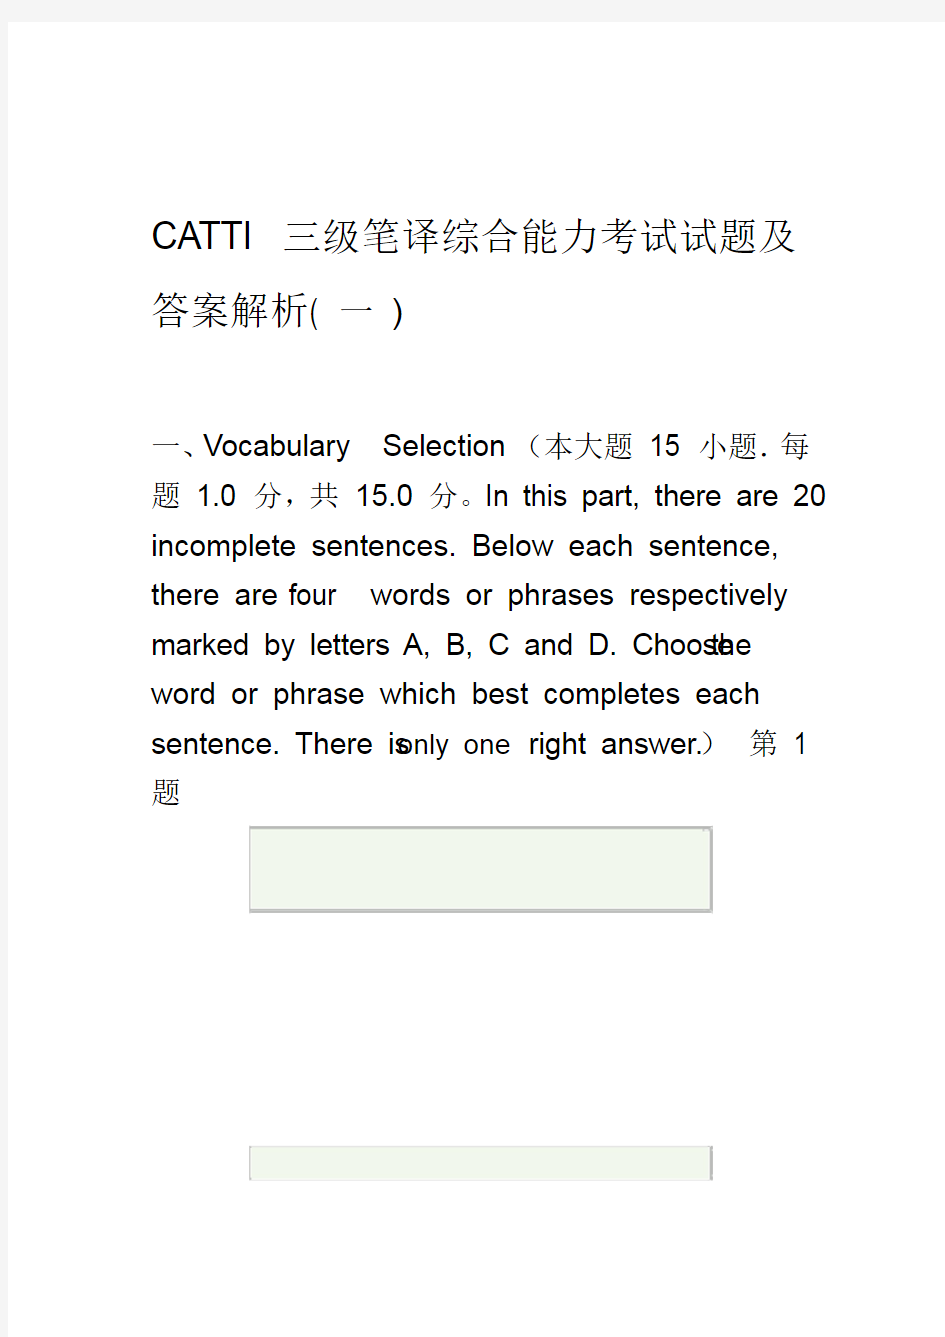 CATTI三级笔译综合能力真题及答案解析